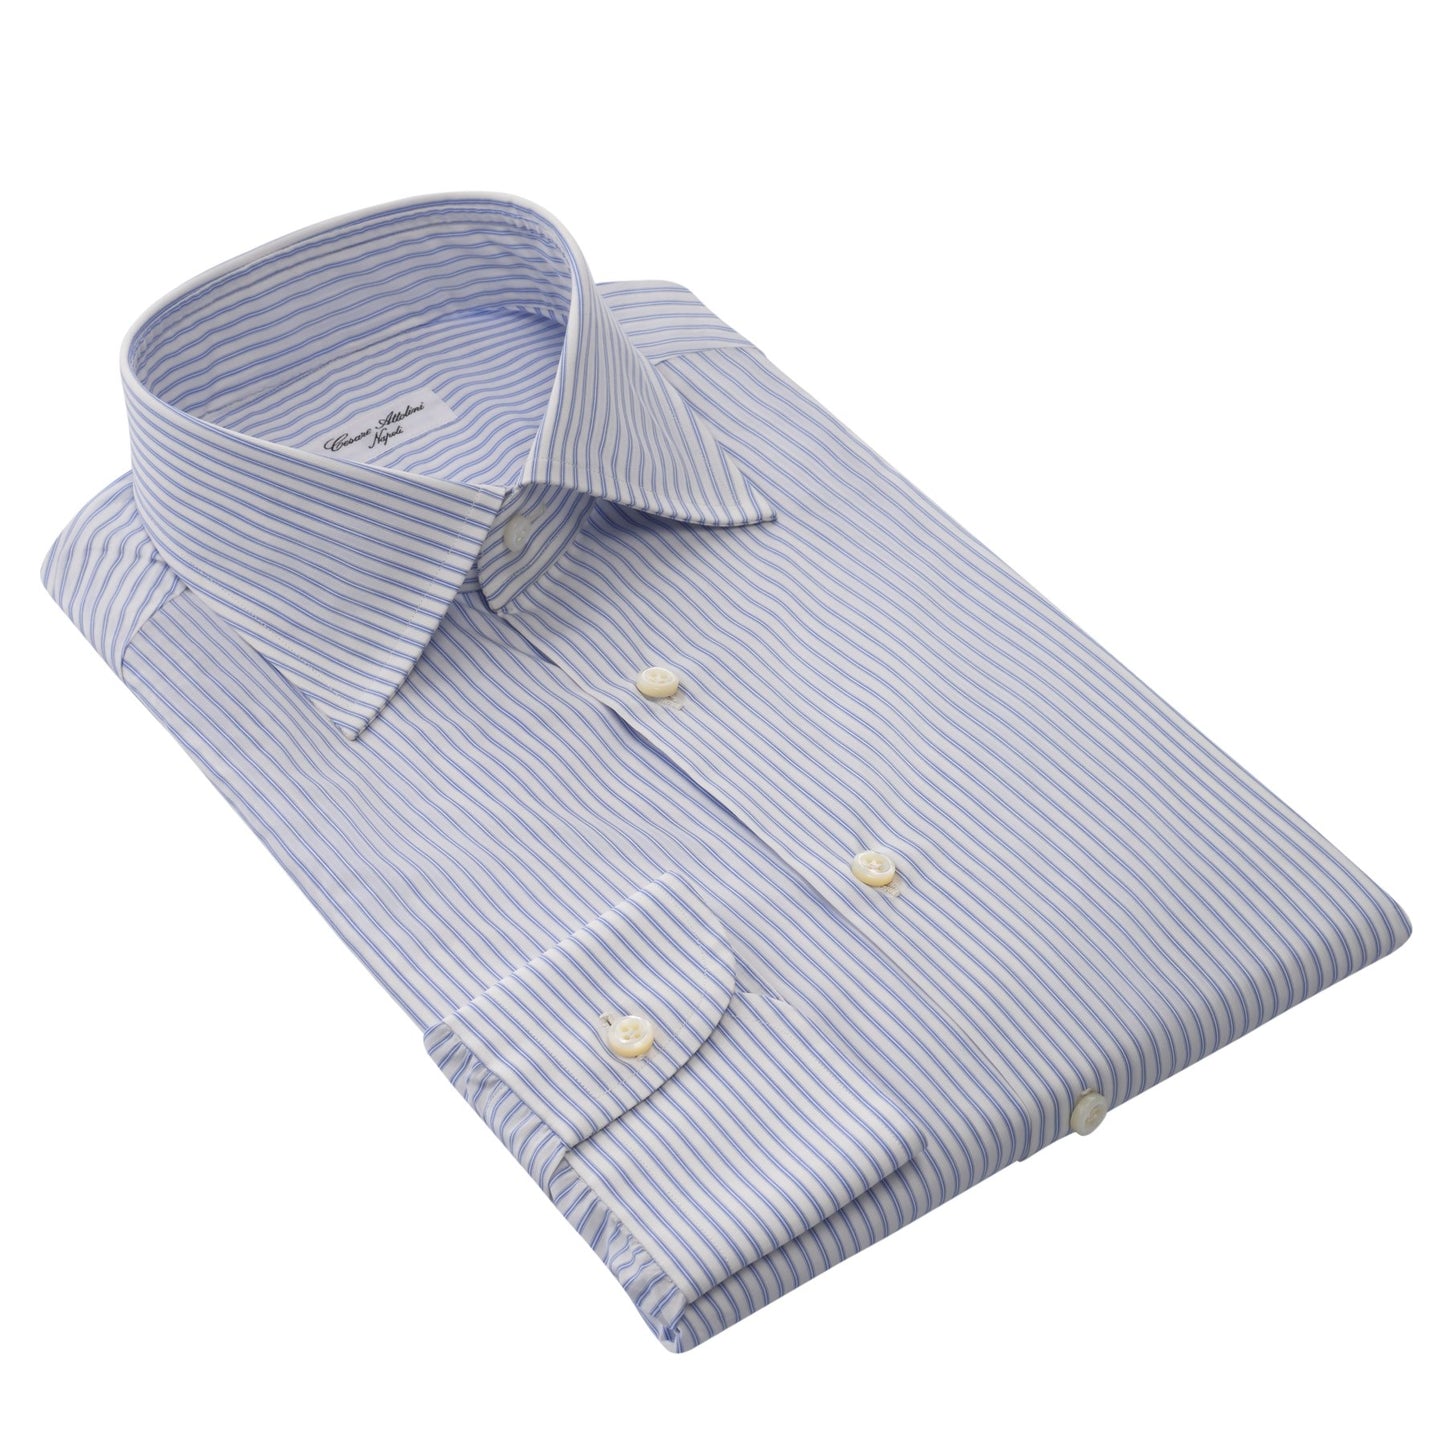 Cesare Attolini Striped Cotton Shirt in White and Light Blue - SARTALE